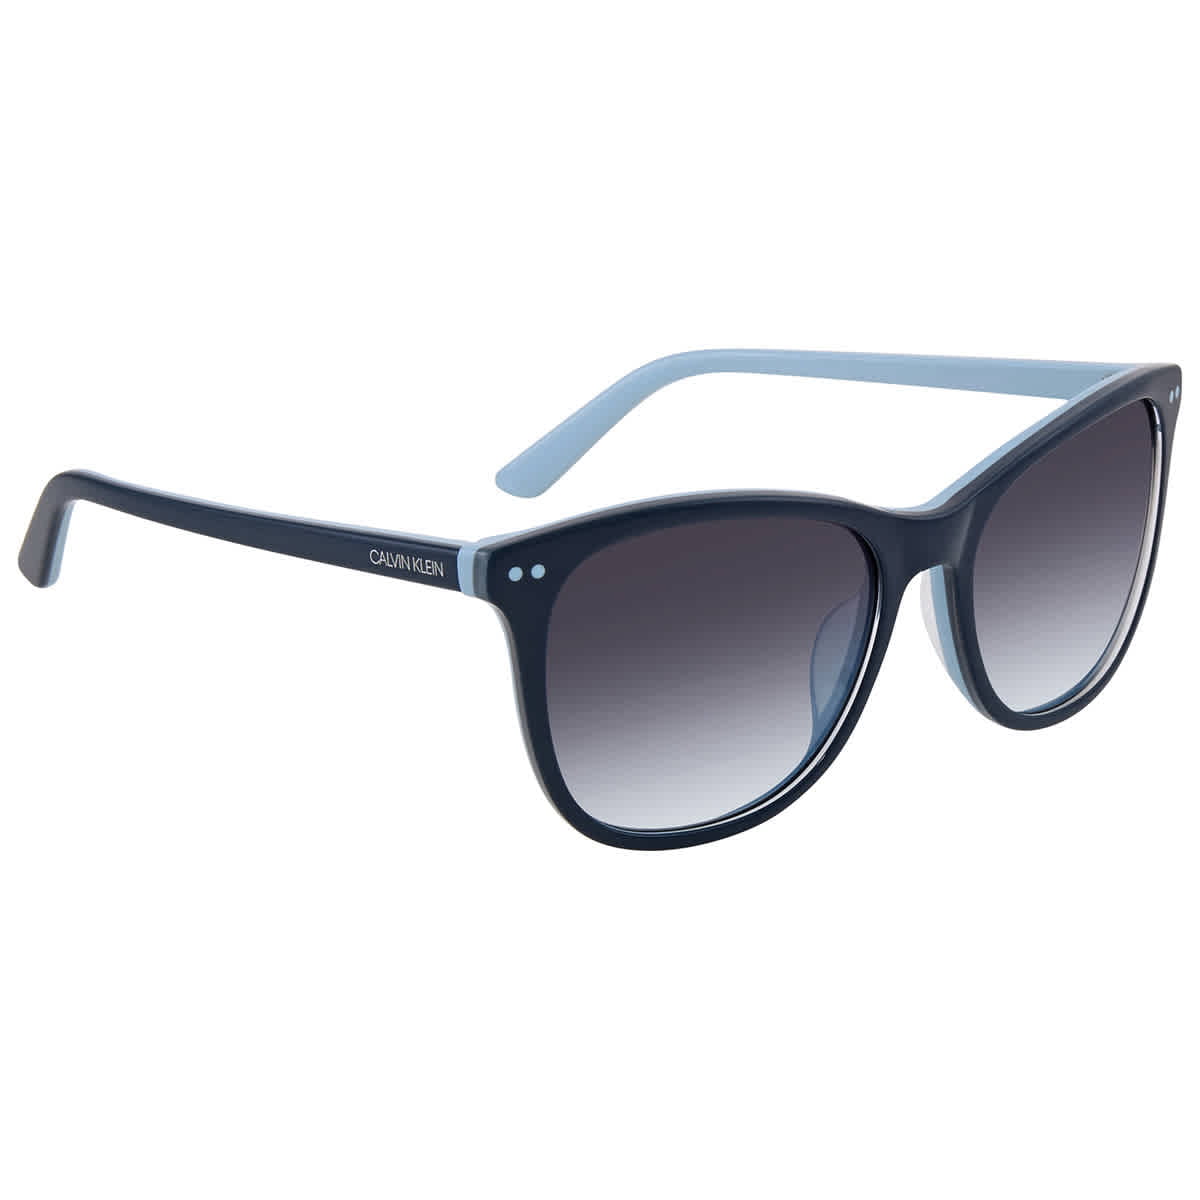 Calvin Klein Ladies Blue Square Sunglasses CK18510S 436 57 